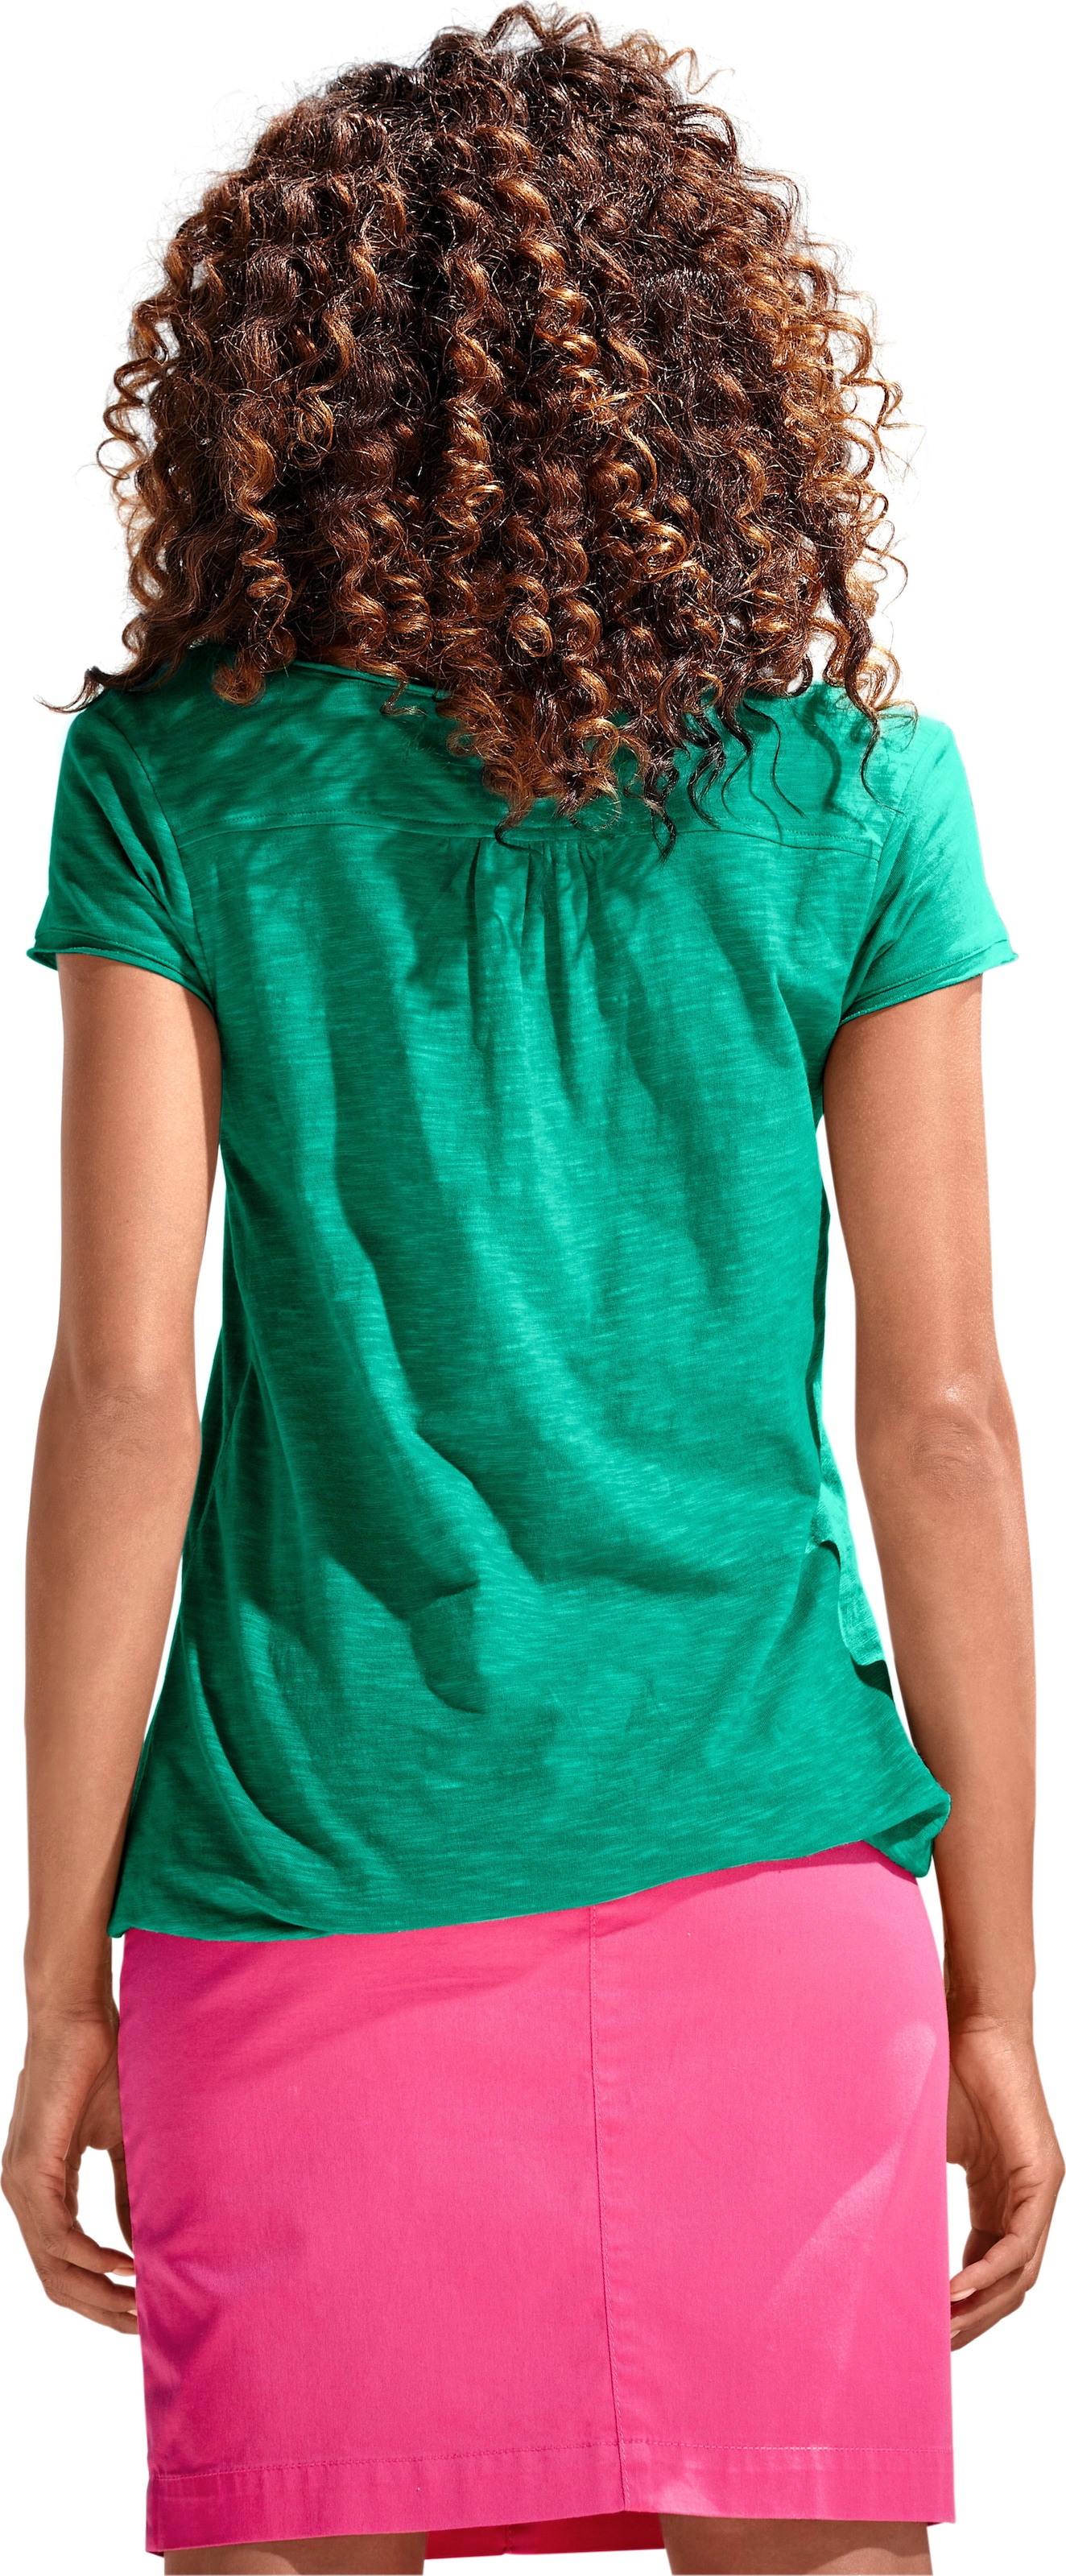 Spitzen Shirt günstig Kaufen-Rundhals-Shirt in grün von heine. Rundhals-Shirt in grün von heine <![CDATA[Rundhals-Shirt Moderne Form mit Gummizugbund. Mit Spitzen-Details und schimmernden Knöpfen. Leichte Shirtware mit Flammé-Effekt.]]>. 